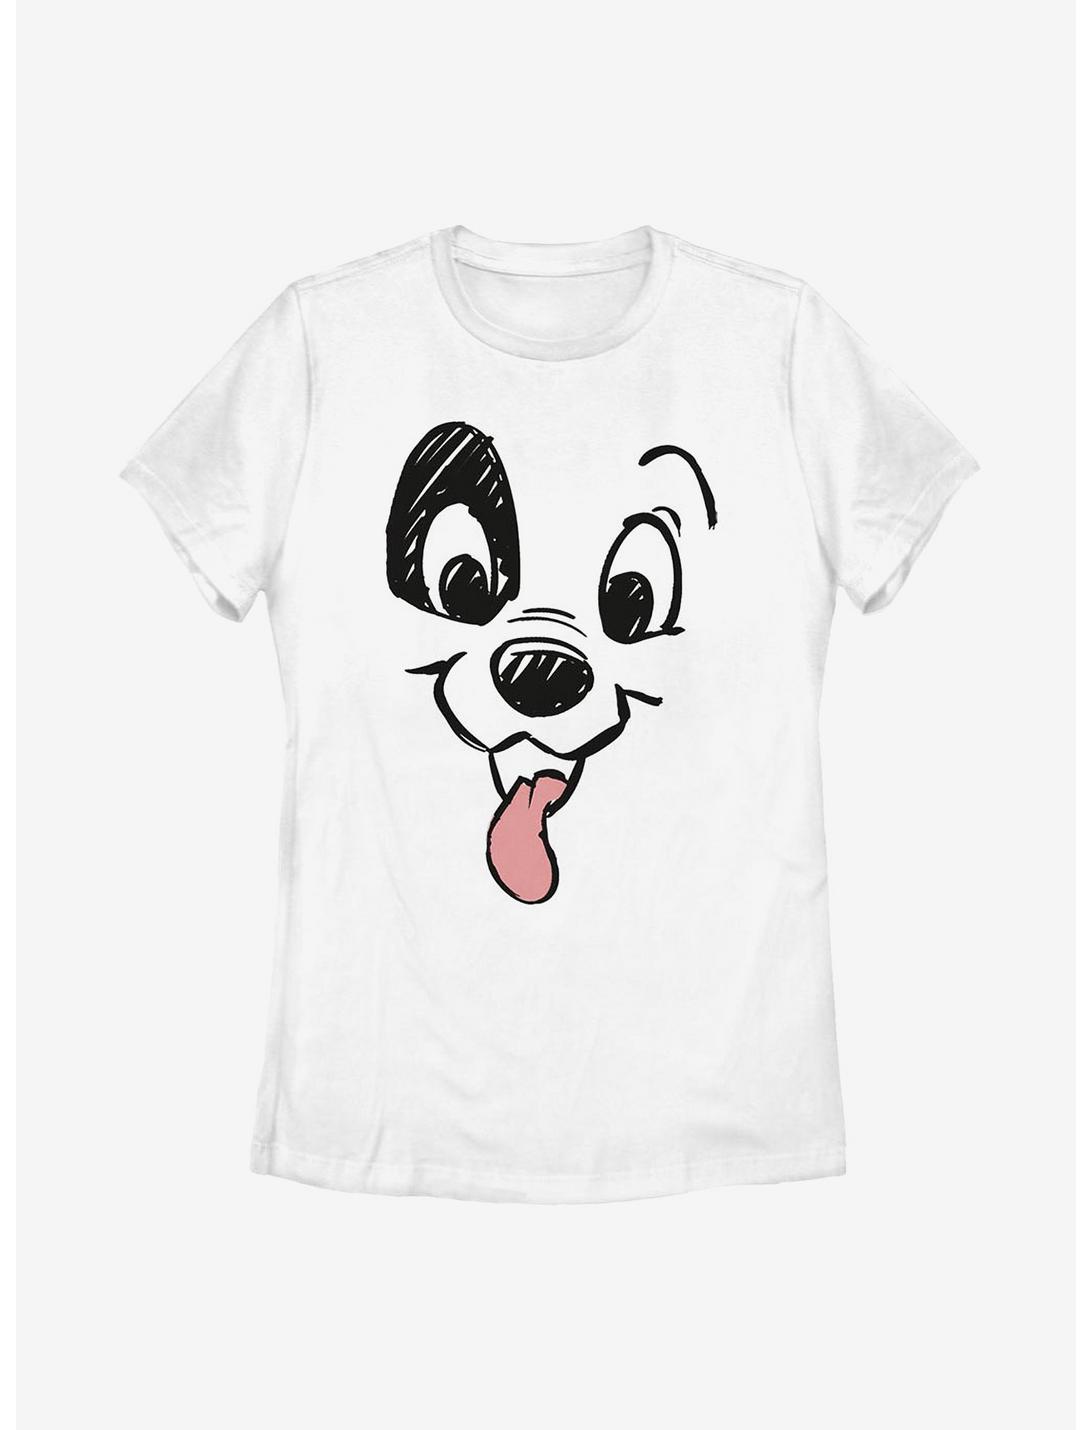 Disney 101 Dalmatians Big Face Womens T-Shirt, WHITE, hi-res